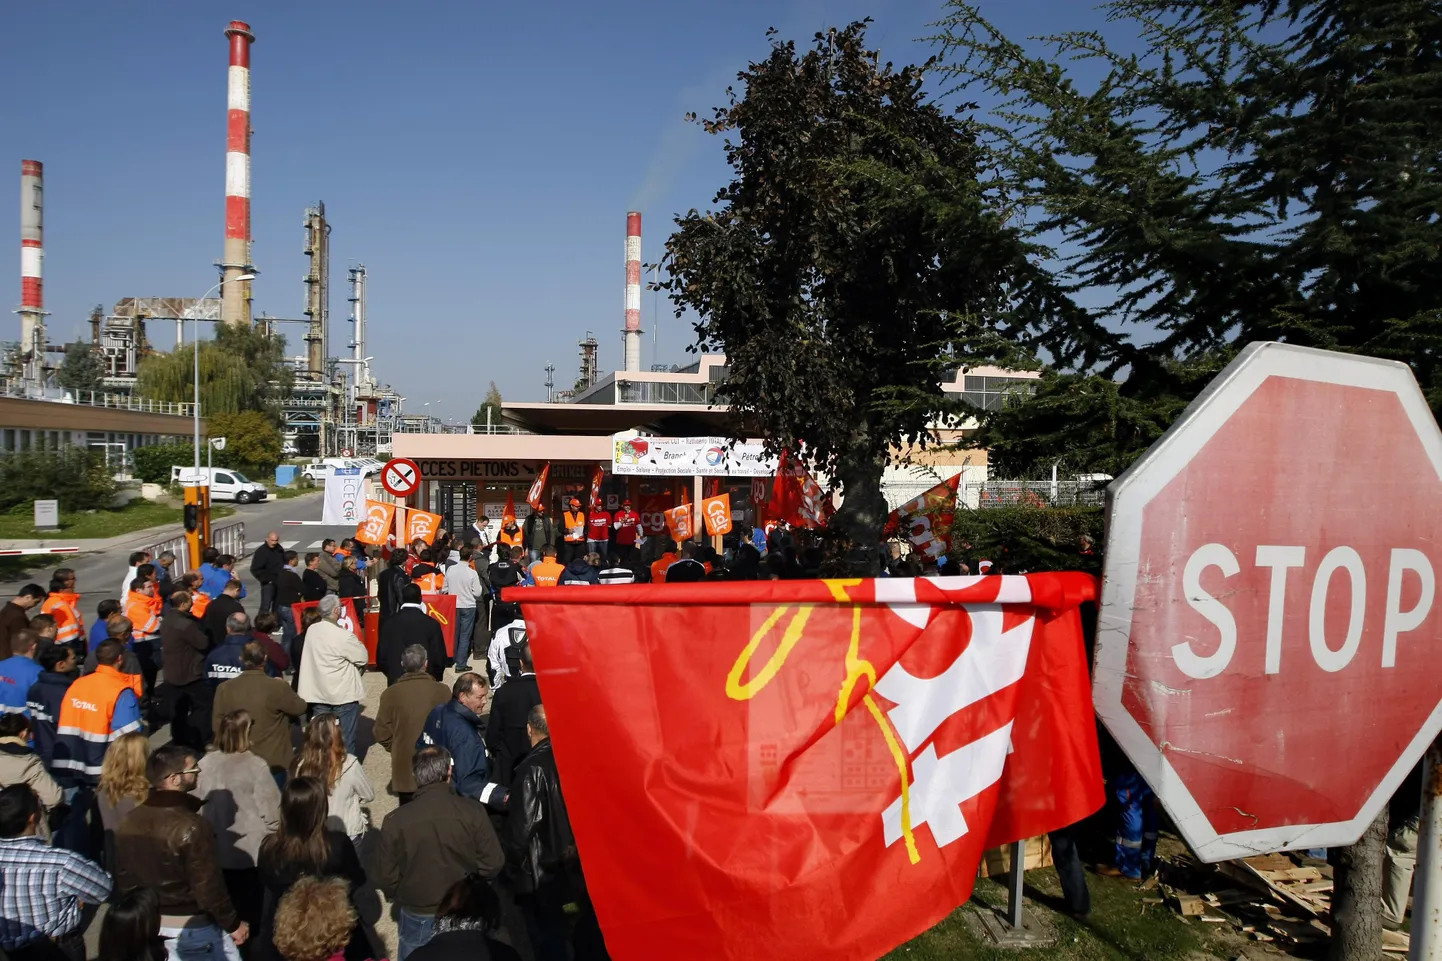 Prantsuse ametiühingutöötajad eile naftatöötlustehase sissepääsu blokeerimas.